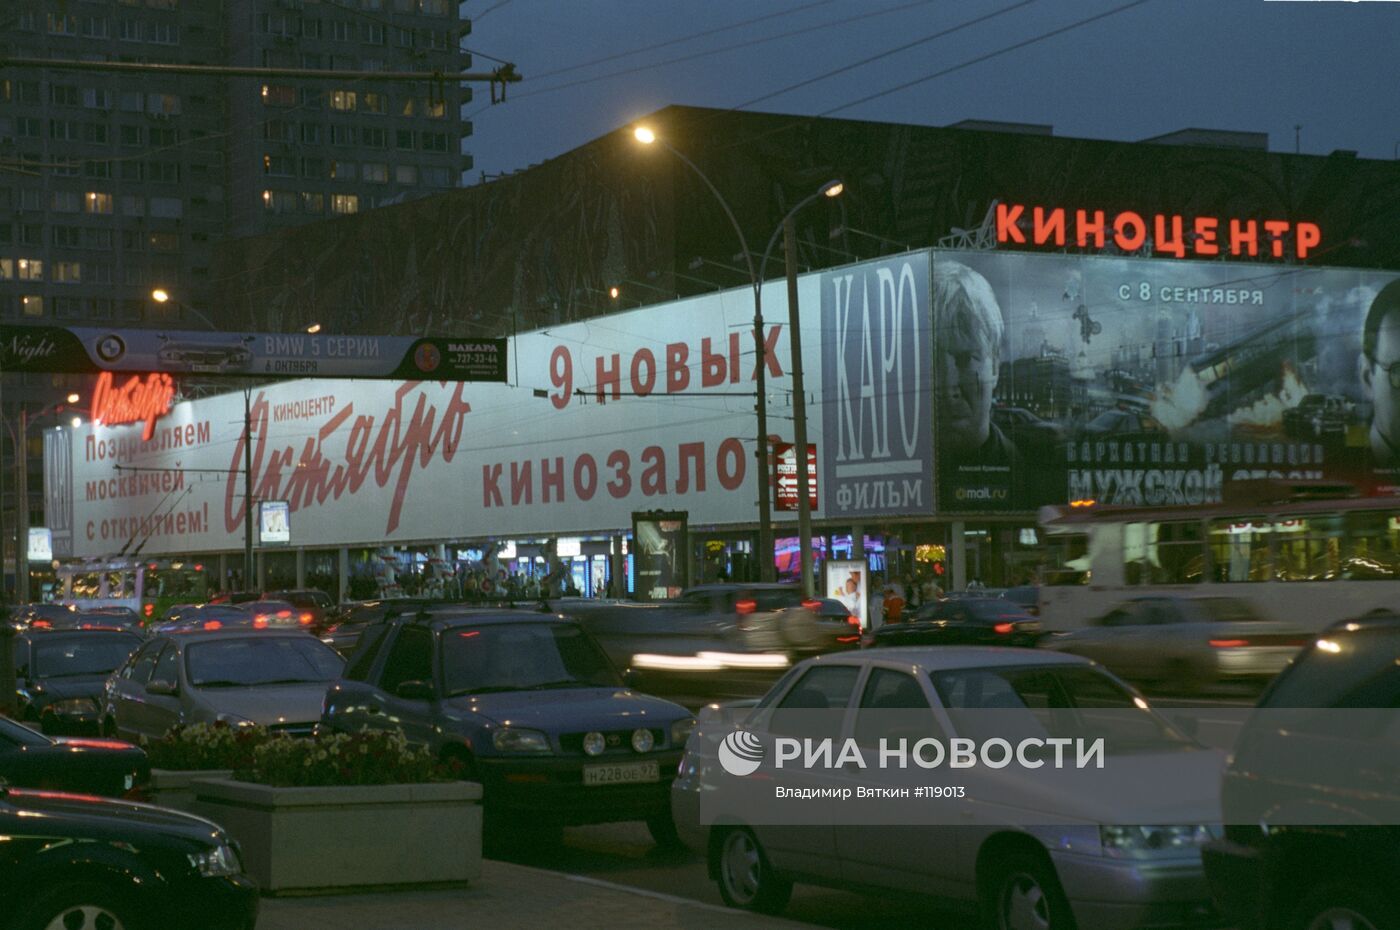 Киноцентр "Октябрь", открывшийся после реконструкции